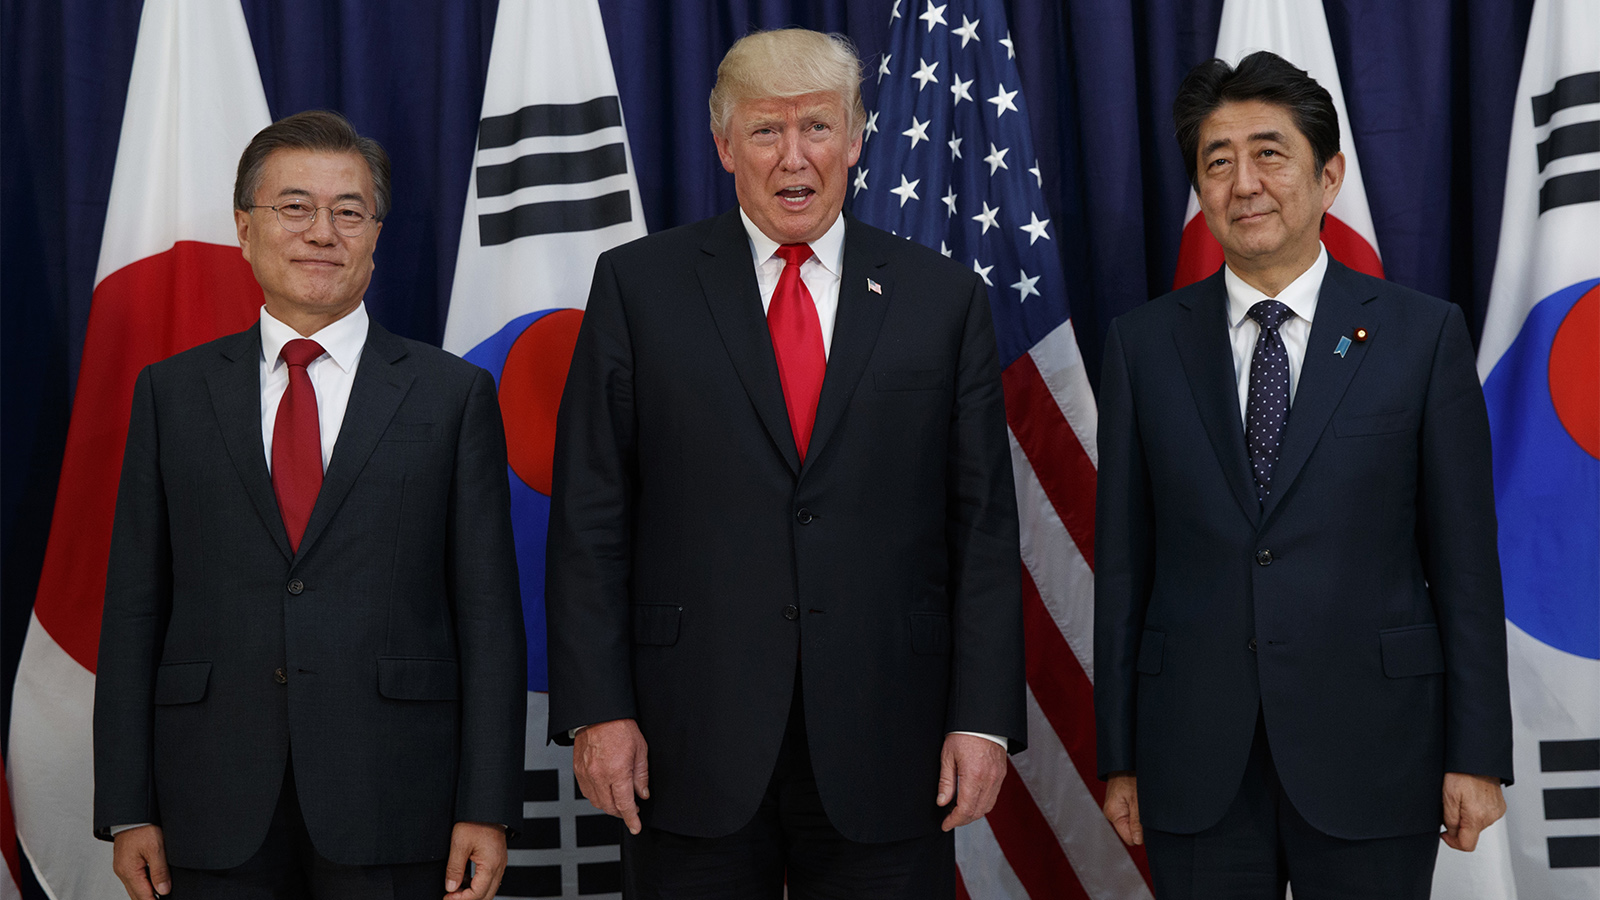 כיצד יגיבו? נשיא ארה"ב טראמפ וראשי ממשלות יפן וקוריאה הדרומית (צילום: AP Photo/Evan Vucci).